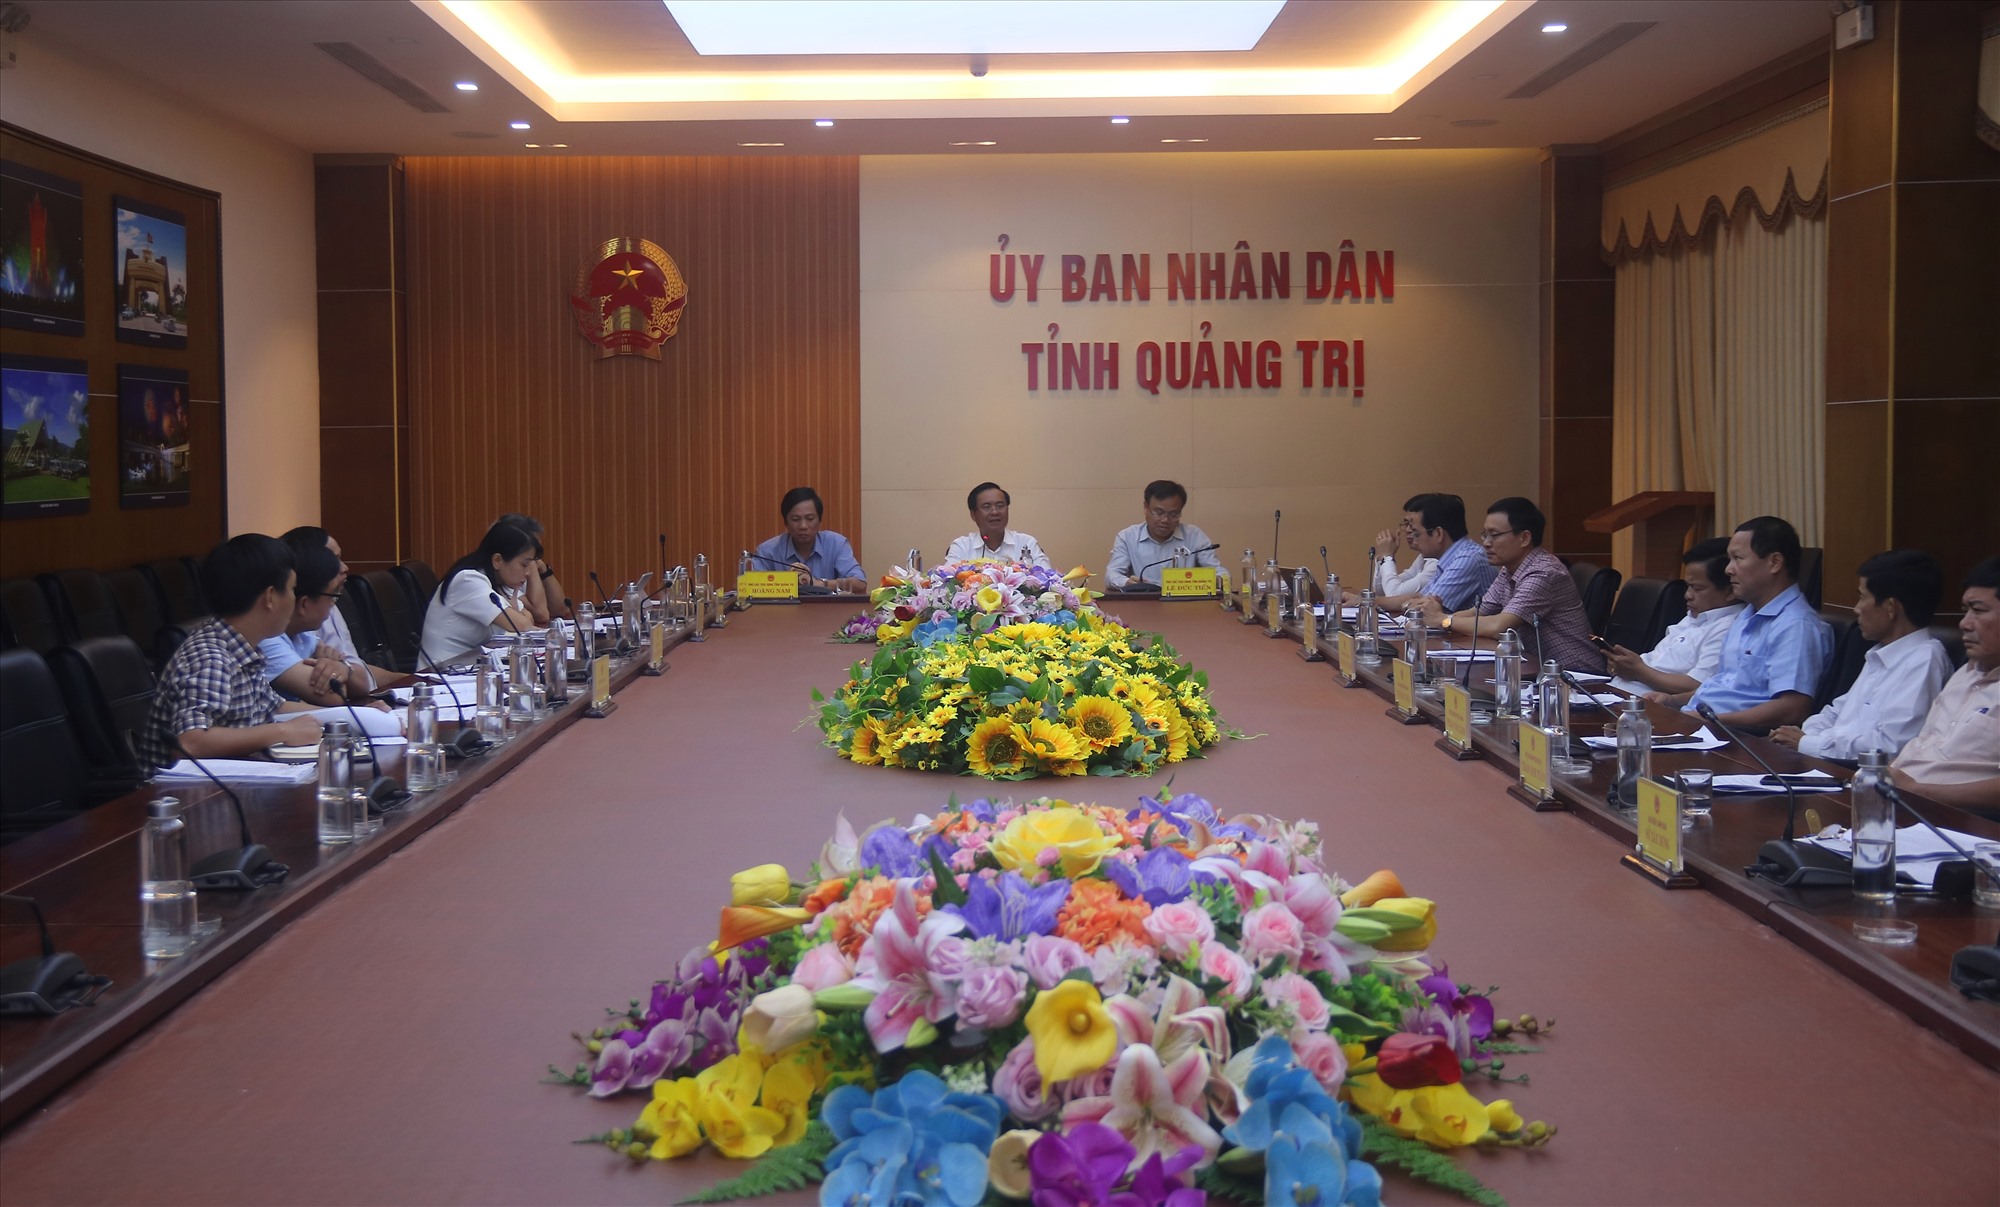 Chủ tịch UBND tỉnh Võ Văn Hưng cùng các phó chủ tịch UBND tỉnh: Hoàng Nam, Lê Đức Tiến chủ trì cuộc họp - Ảnh: N.B